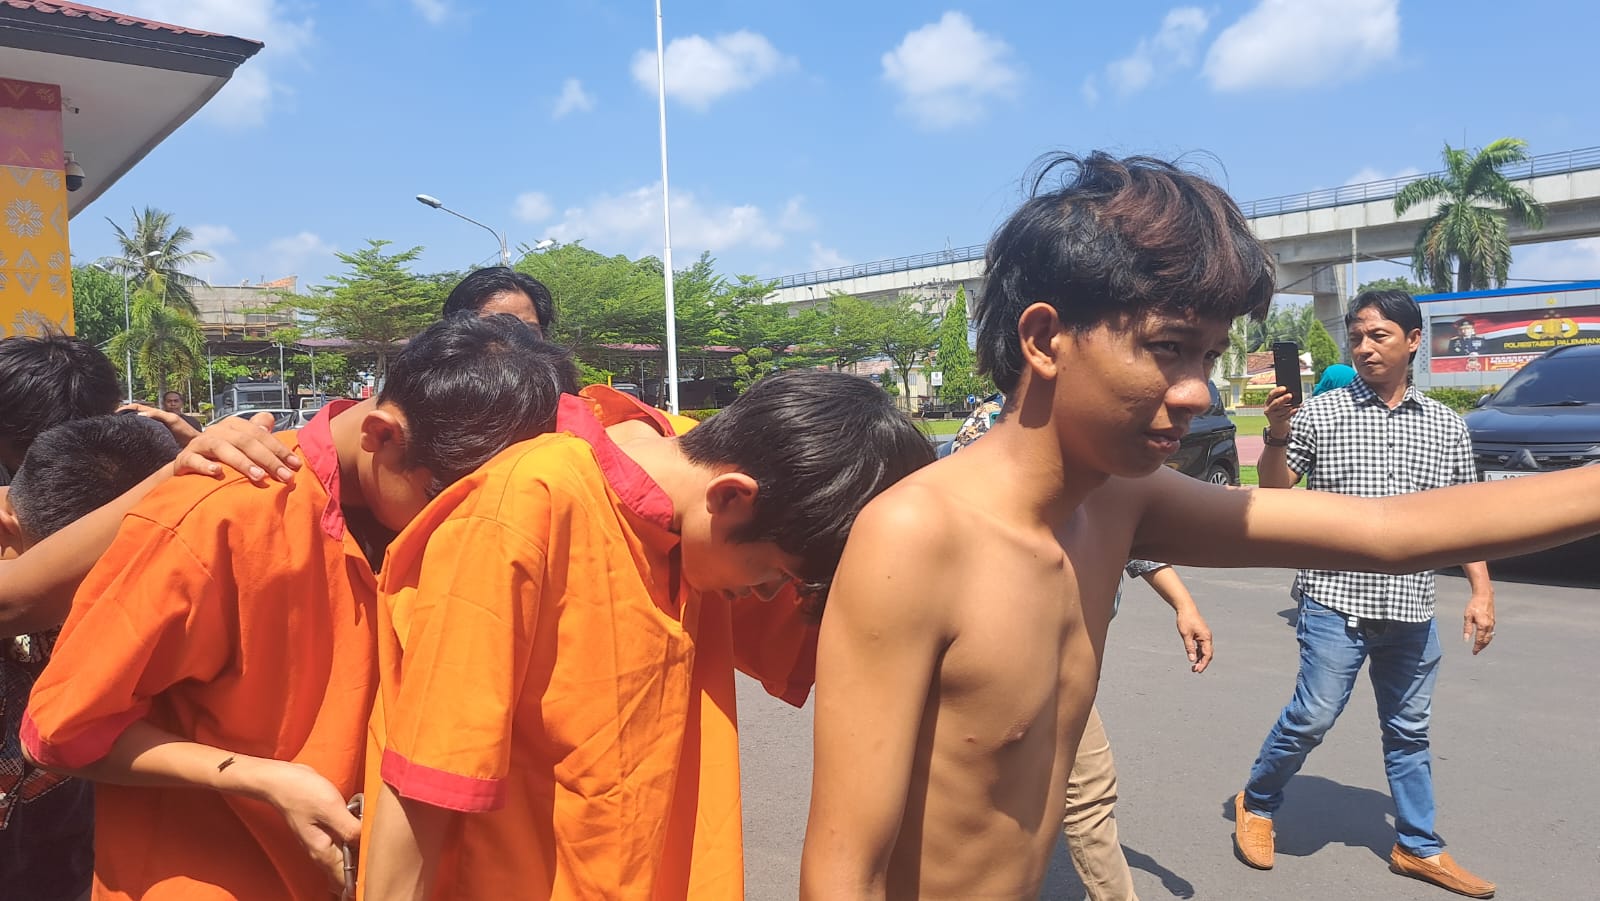 Jadi TO Polisi, 2 Pelaku Tawuran yang Ikut Tewaskan Pelajar SMA di Palembang Diminta Menyerahkan Diri